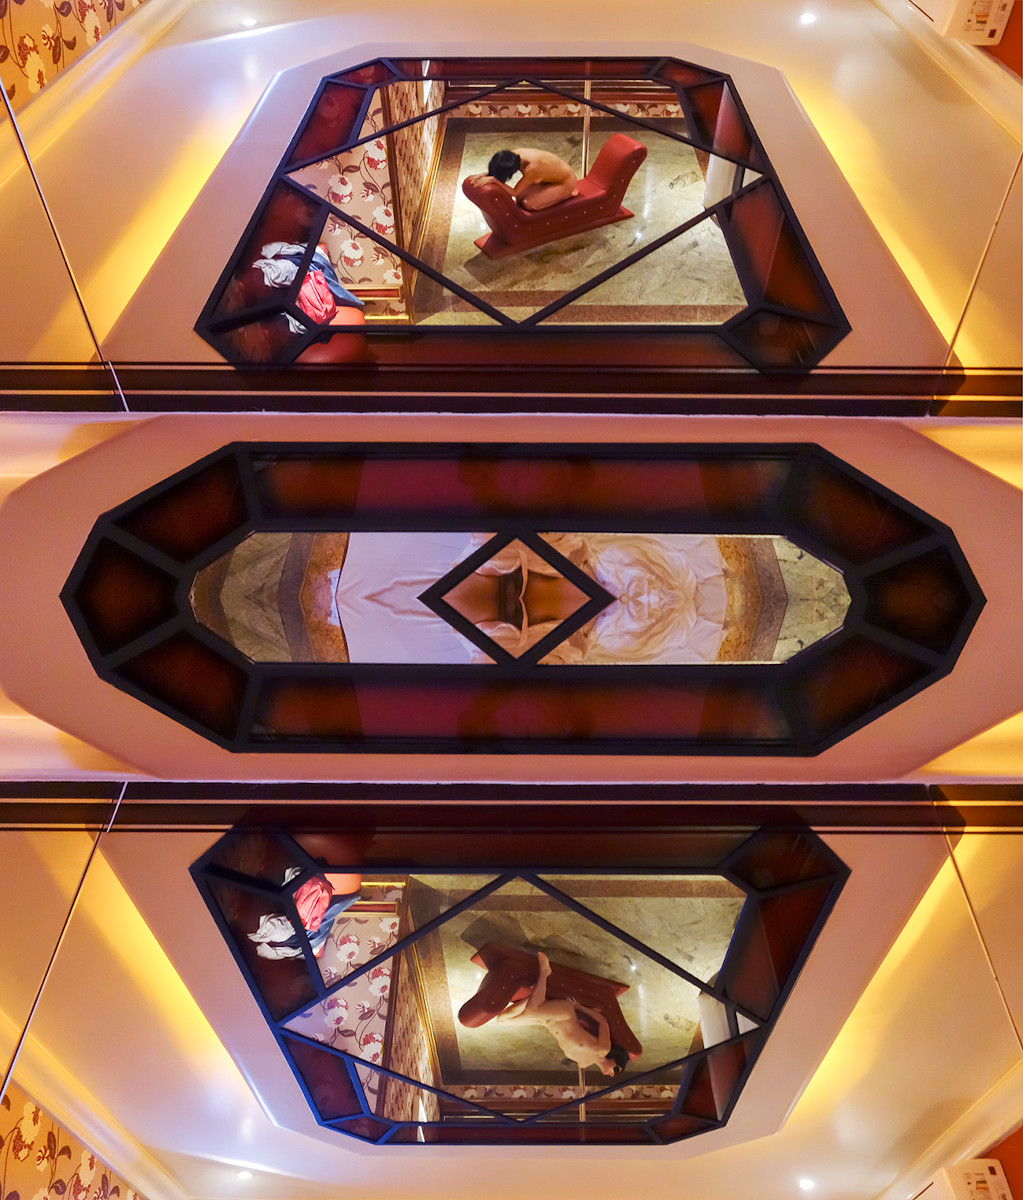 Ώμοι Μόνικα, obra Mirrors (2014) (1 από 5 Είδη), Σειρά Desire - Μυστική αρχιτεκτονική, Φωτογραφία τυπωμένη σε βαμβακερό χαρτί Hahnemühle 308 g, Διαστάσεις: 117 x 100 cm. Φωτογραφίες: Αποκάλυψη.